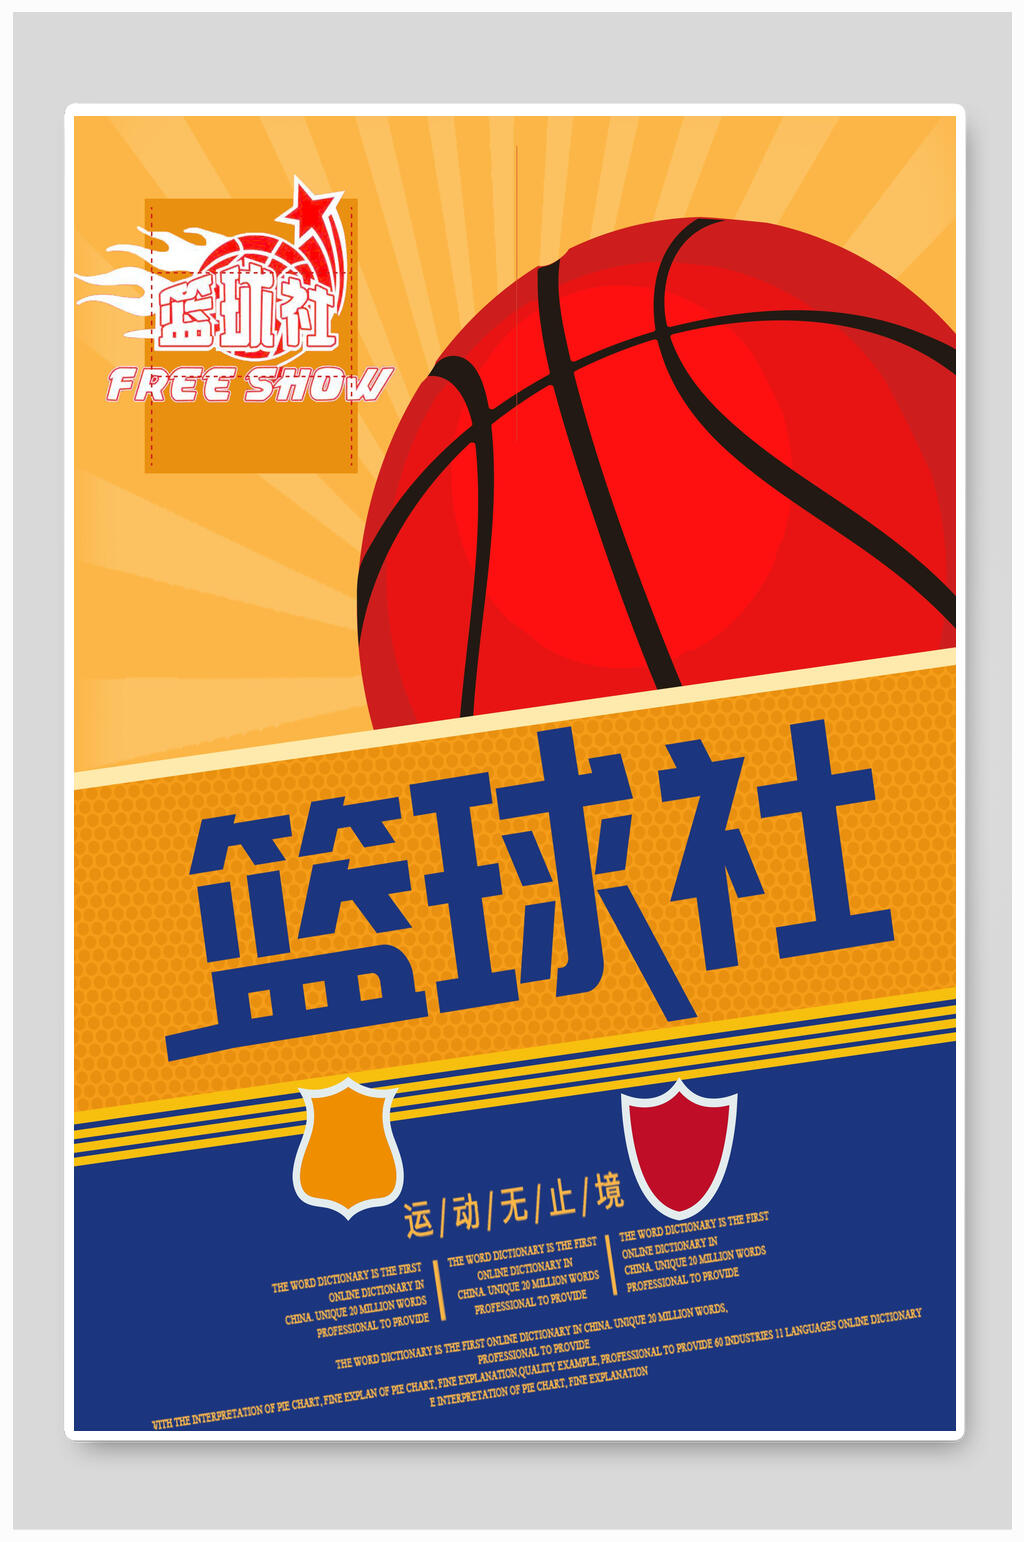 篮球俱乐部海报简单图片